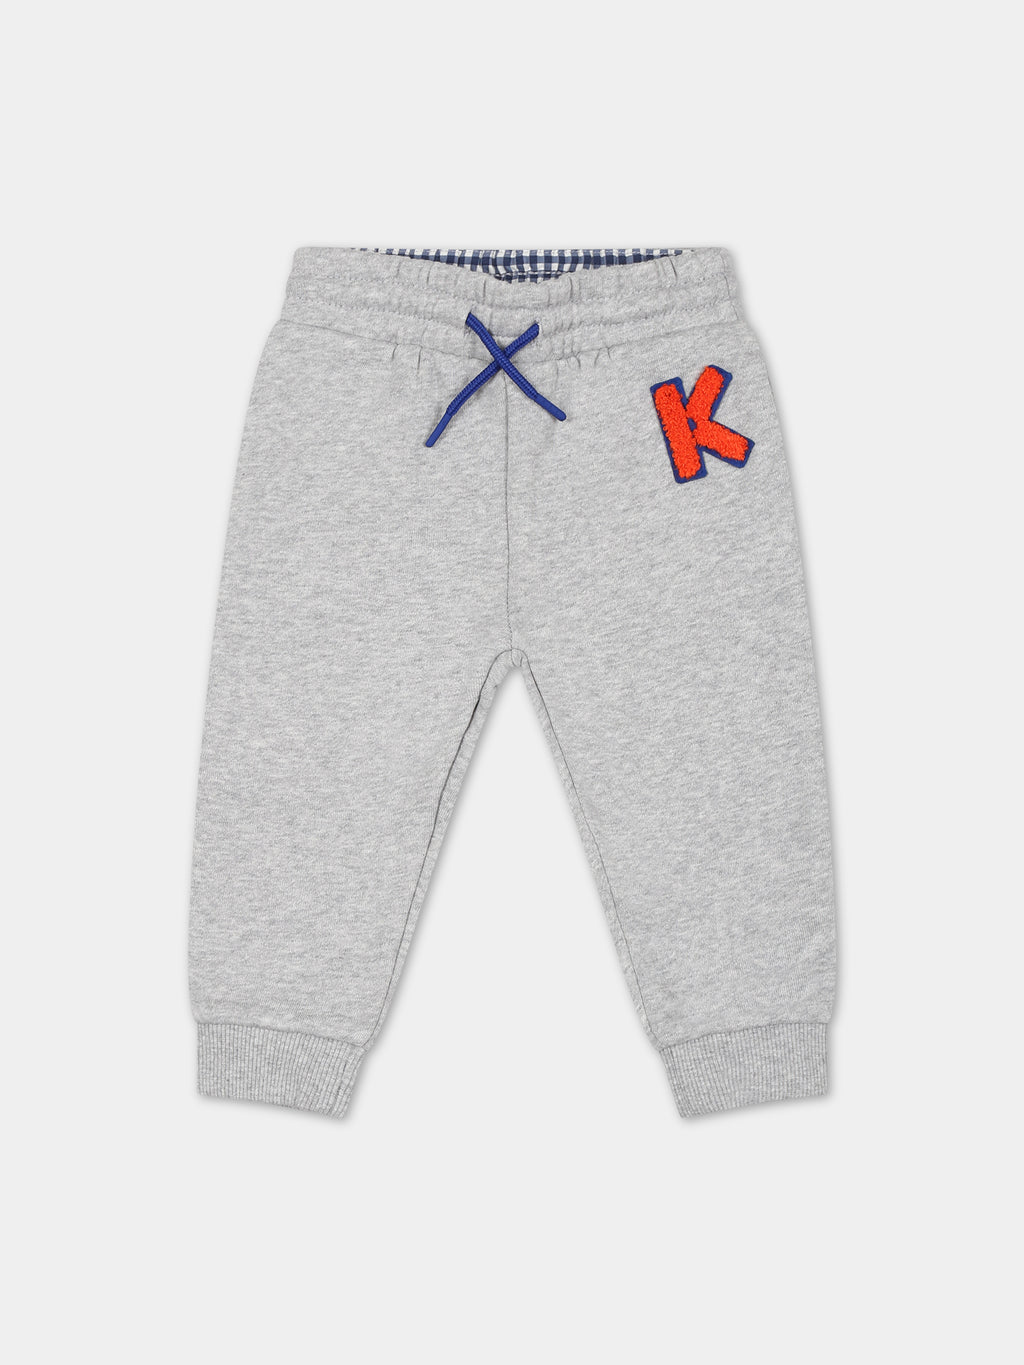 Pantalone grigio per neonato con logo